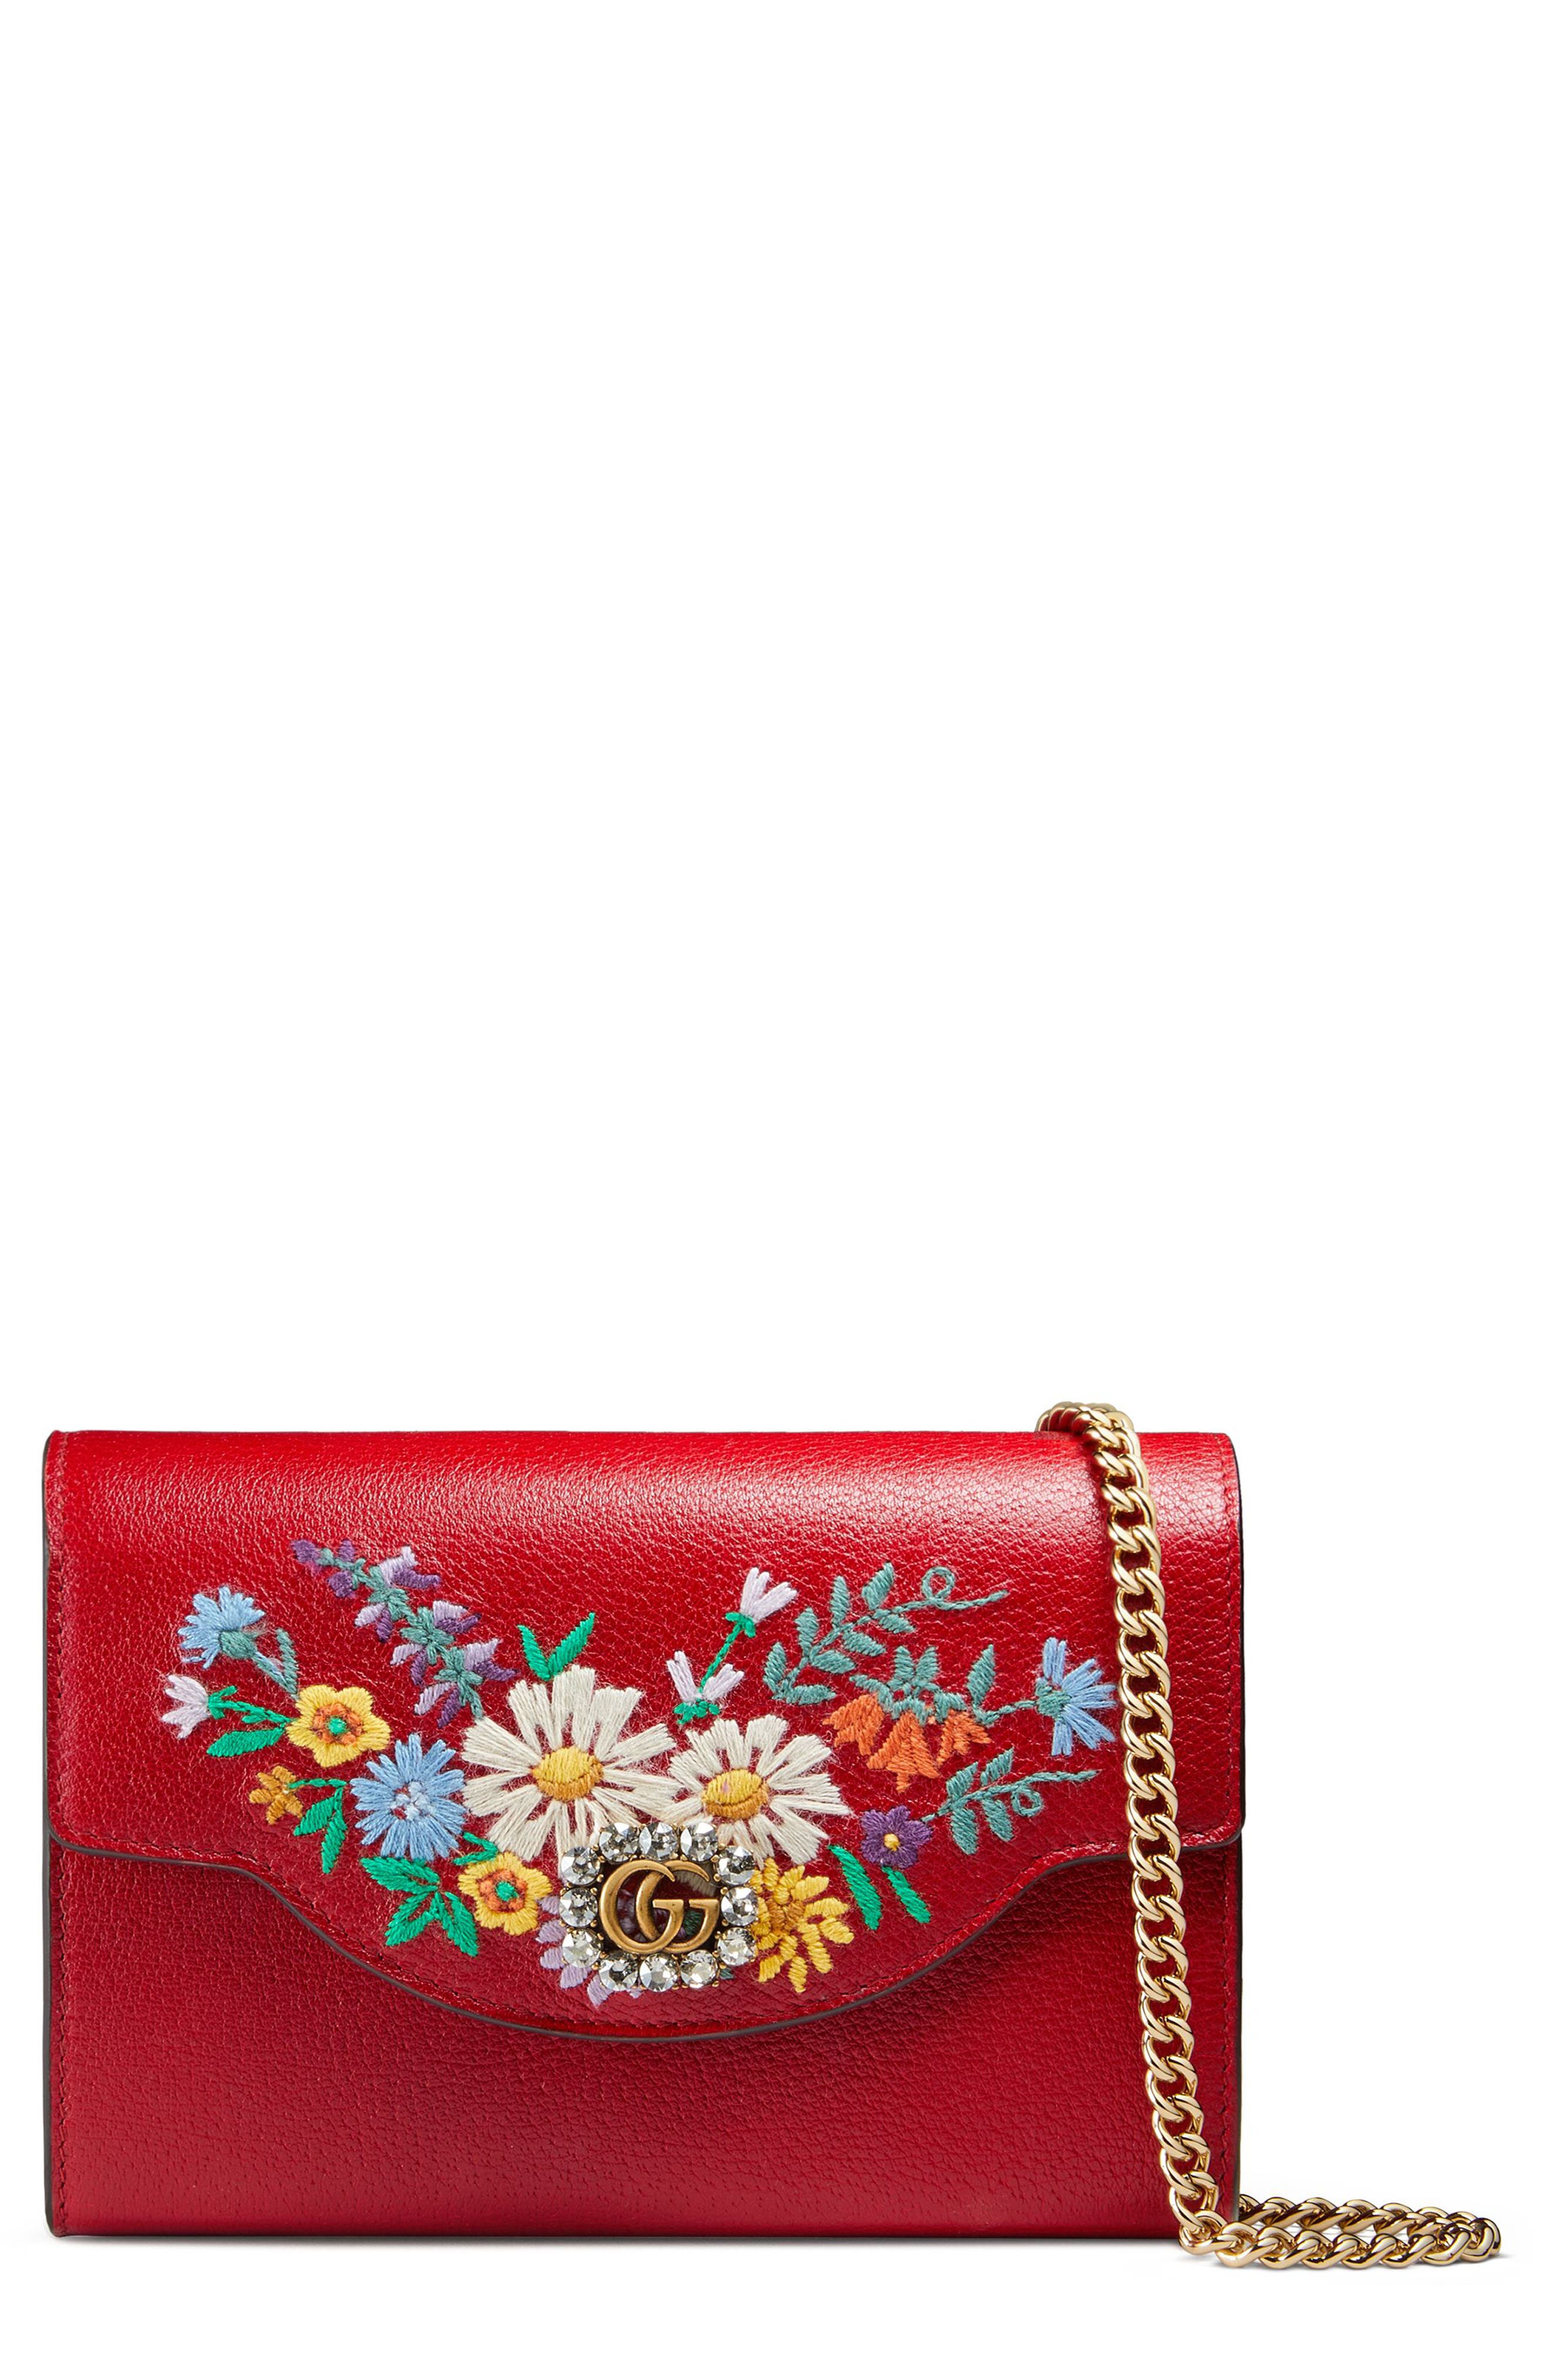 gucci embroidered purse